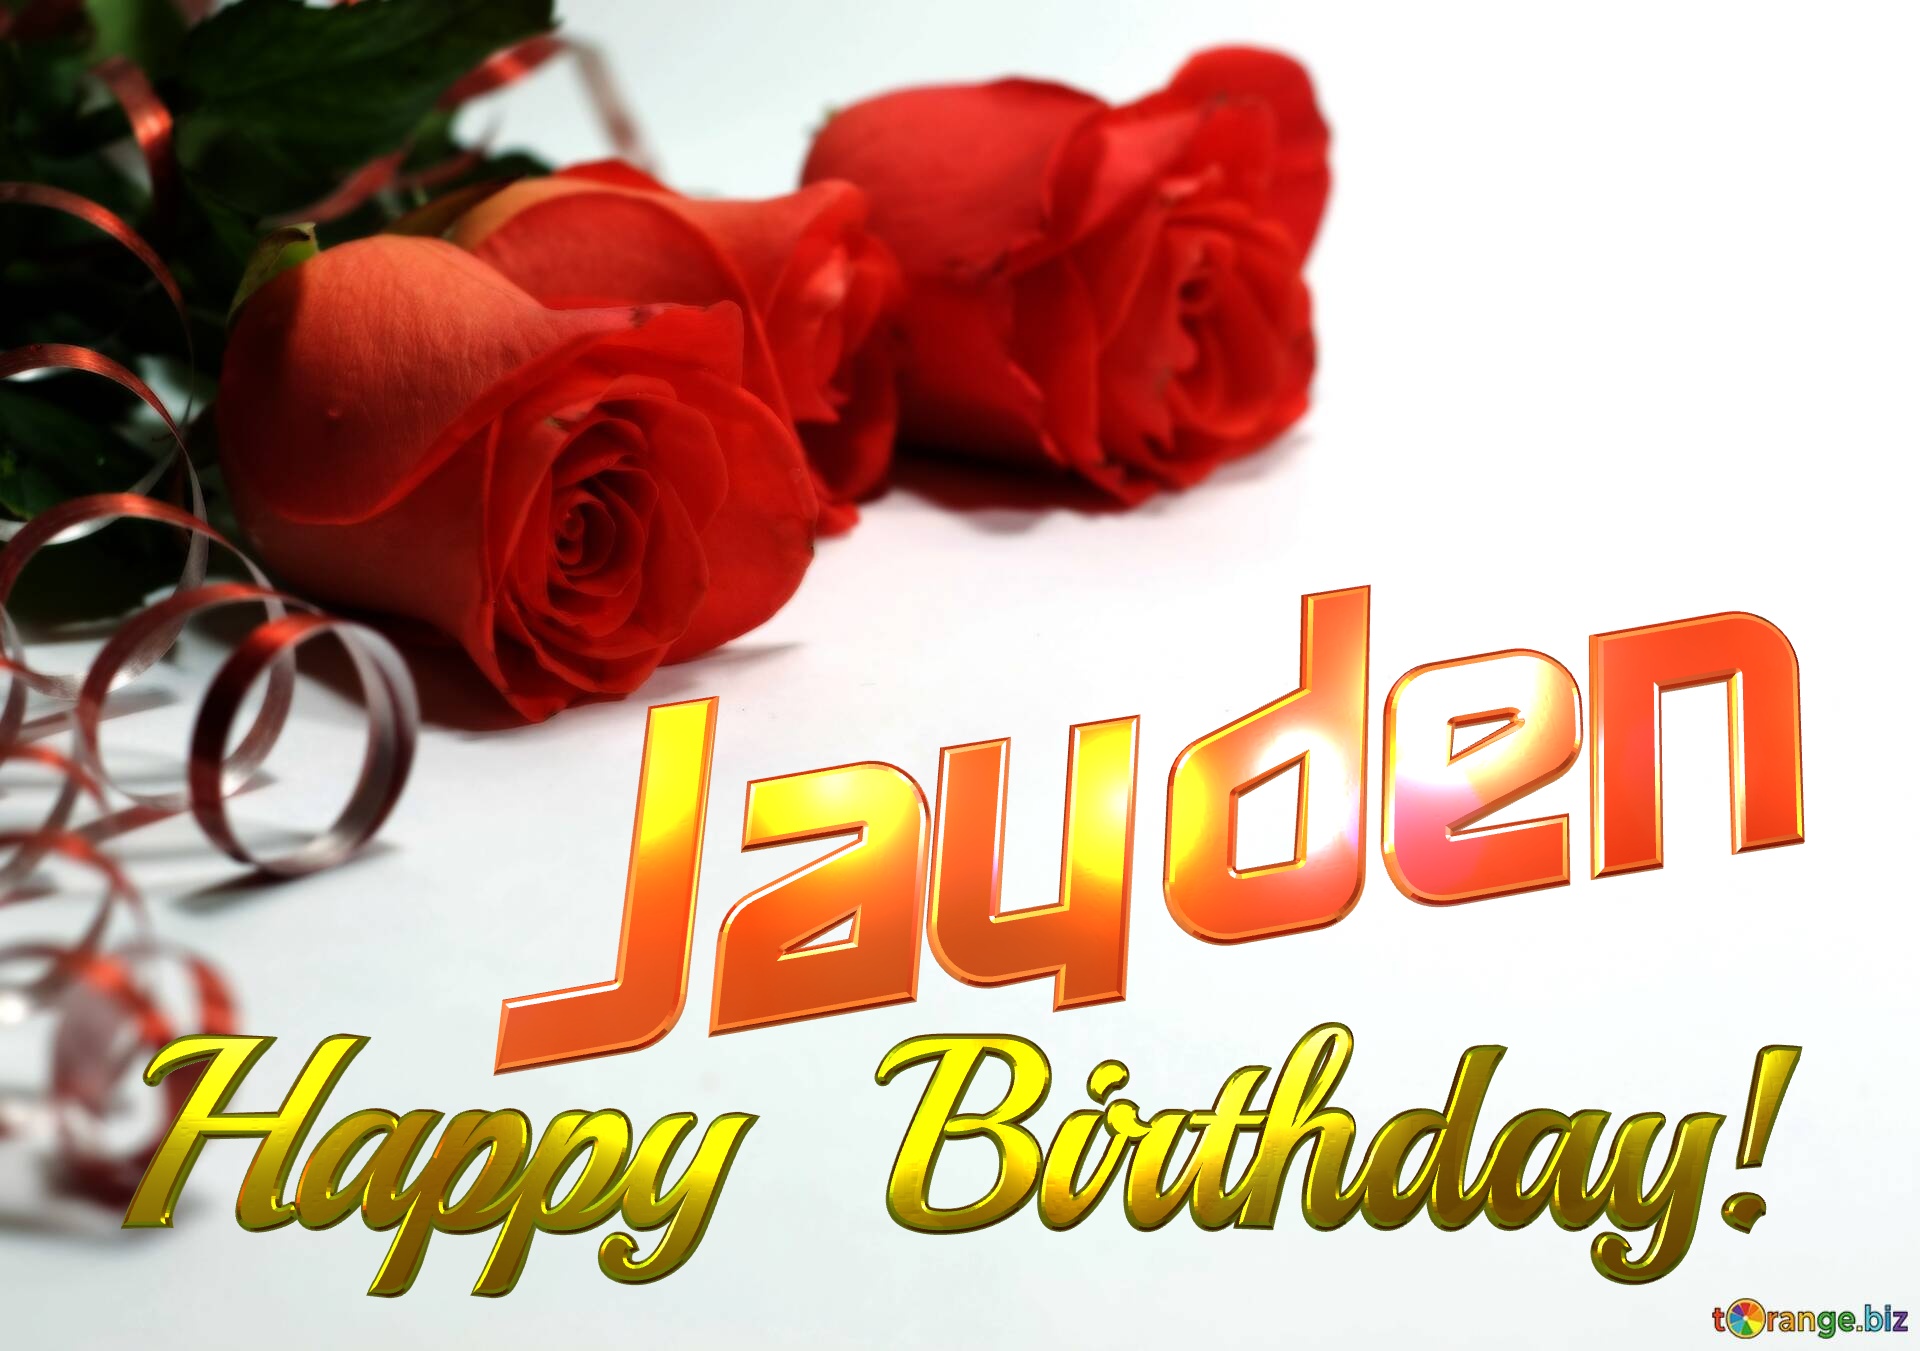 Jayden   Birthday   Wishes background №0